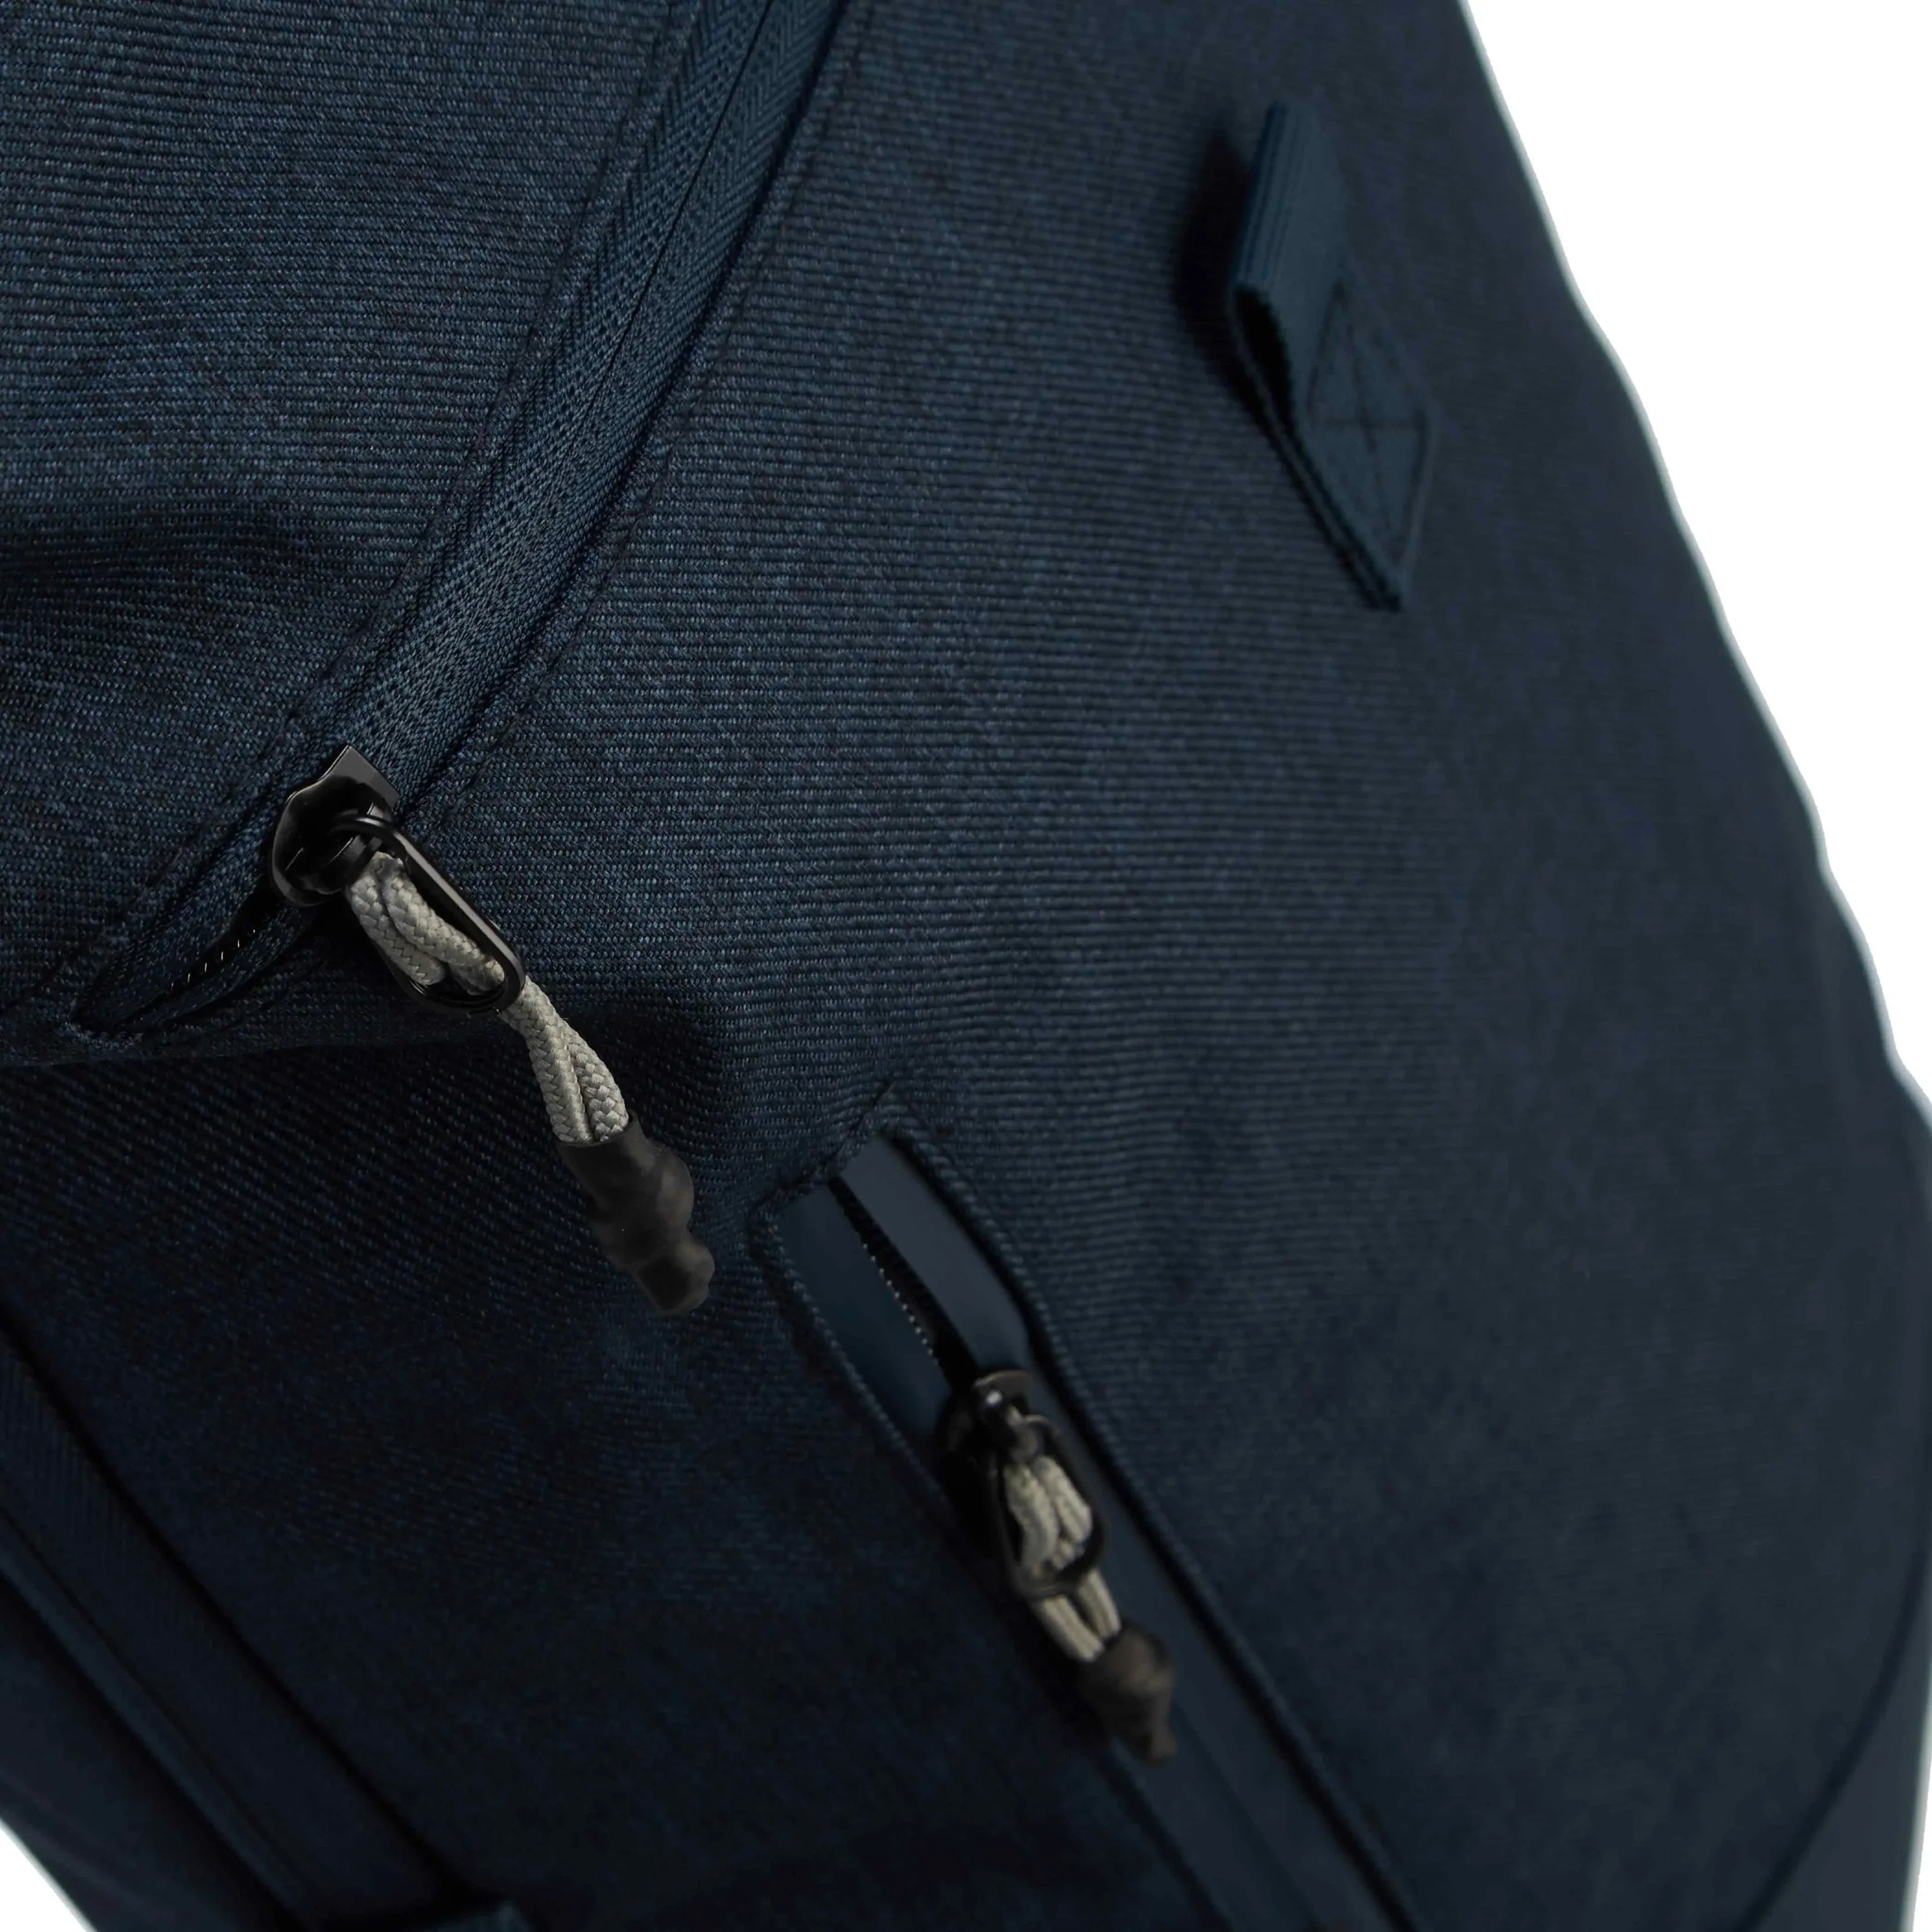 koffer-direkt.de Roll-top backpack 41 cm - olive